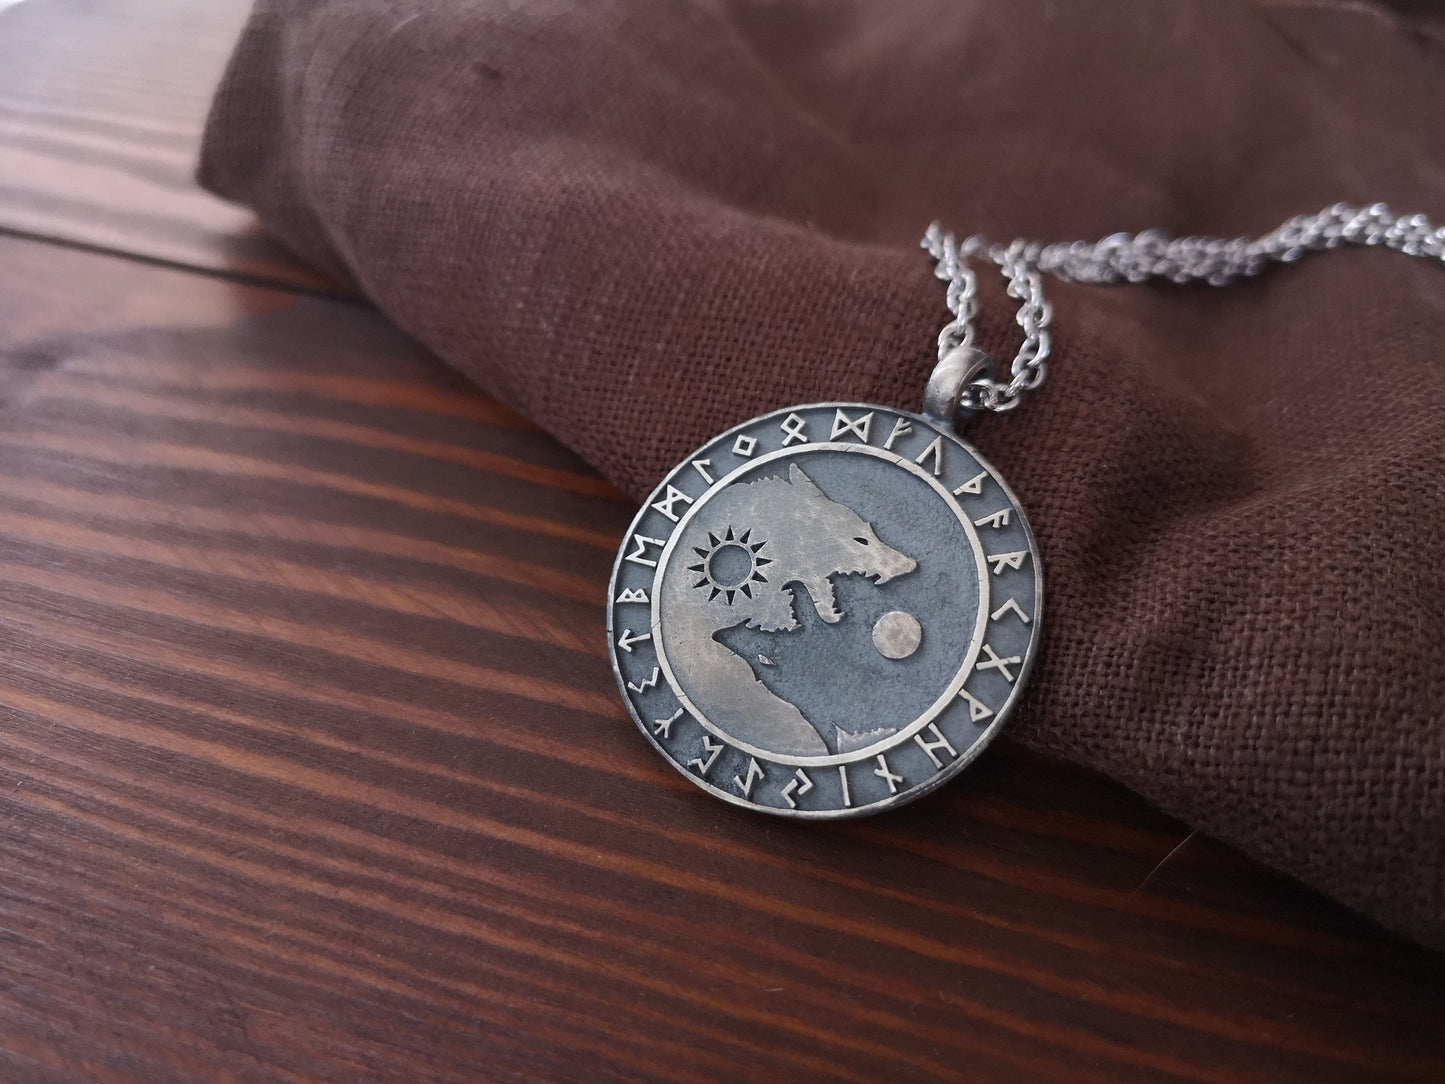 Keltisch und Wikingisch inspirierte Halskette mit Wölfen Skoll Hati, die Sonne und Mond jagen - Balance im Leben, Freundschaftsanhänger für beste Freunde